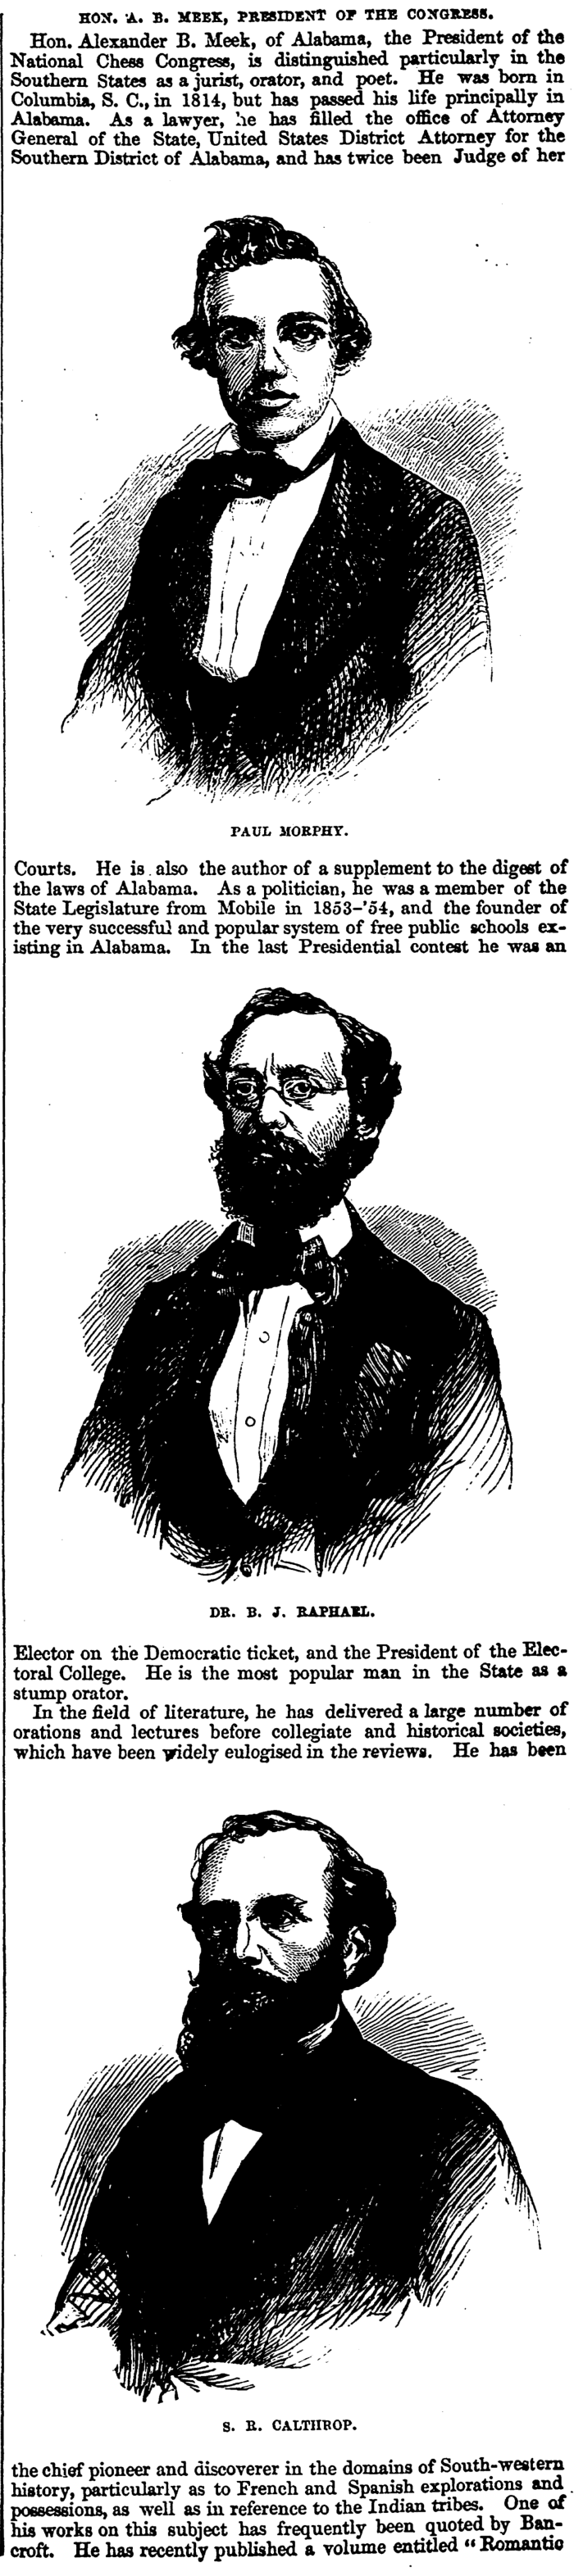 1857.10.31-03 Frank Leslie's Illustrated Newspaper.png